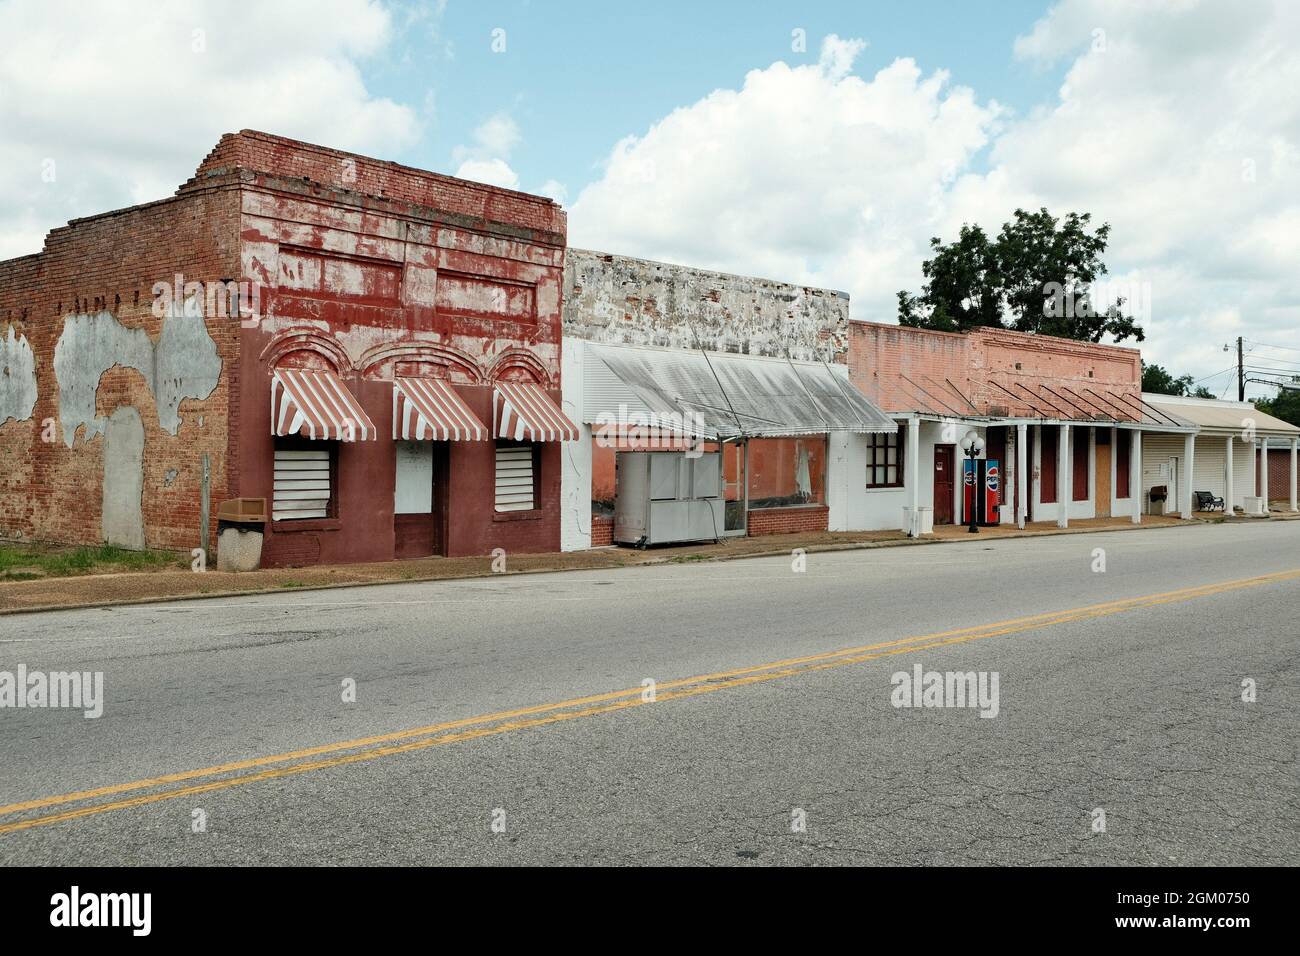 Leere Innenstadt und geschlossene Geschäfte in einer kleinen ländlichen Stadt in Clio Alabama, USA. Stockfoto